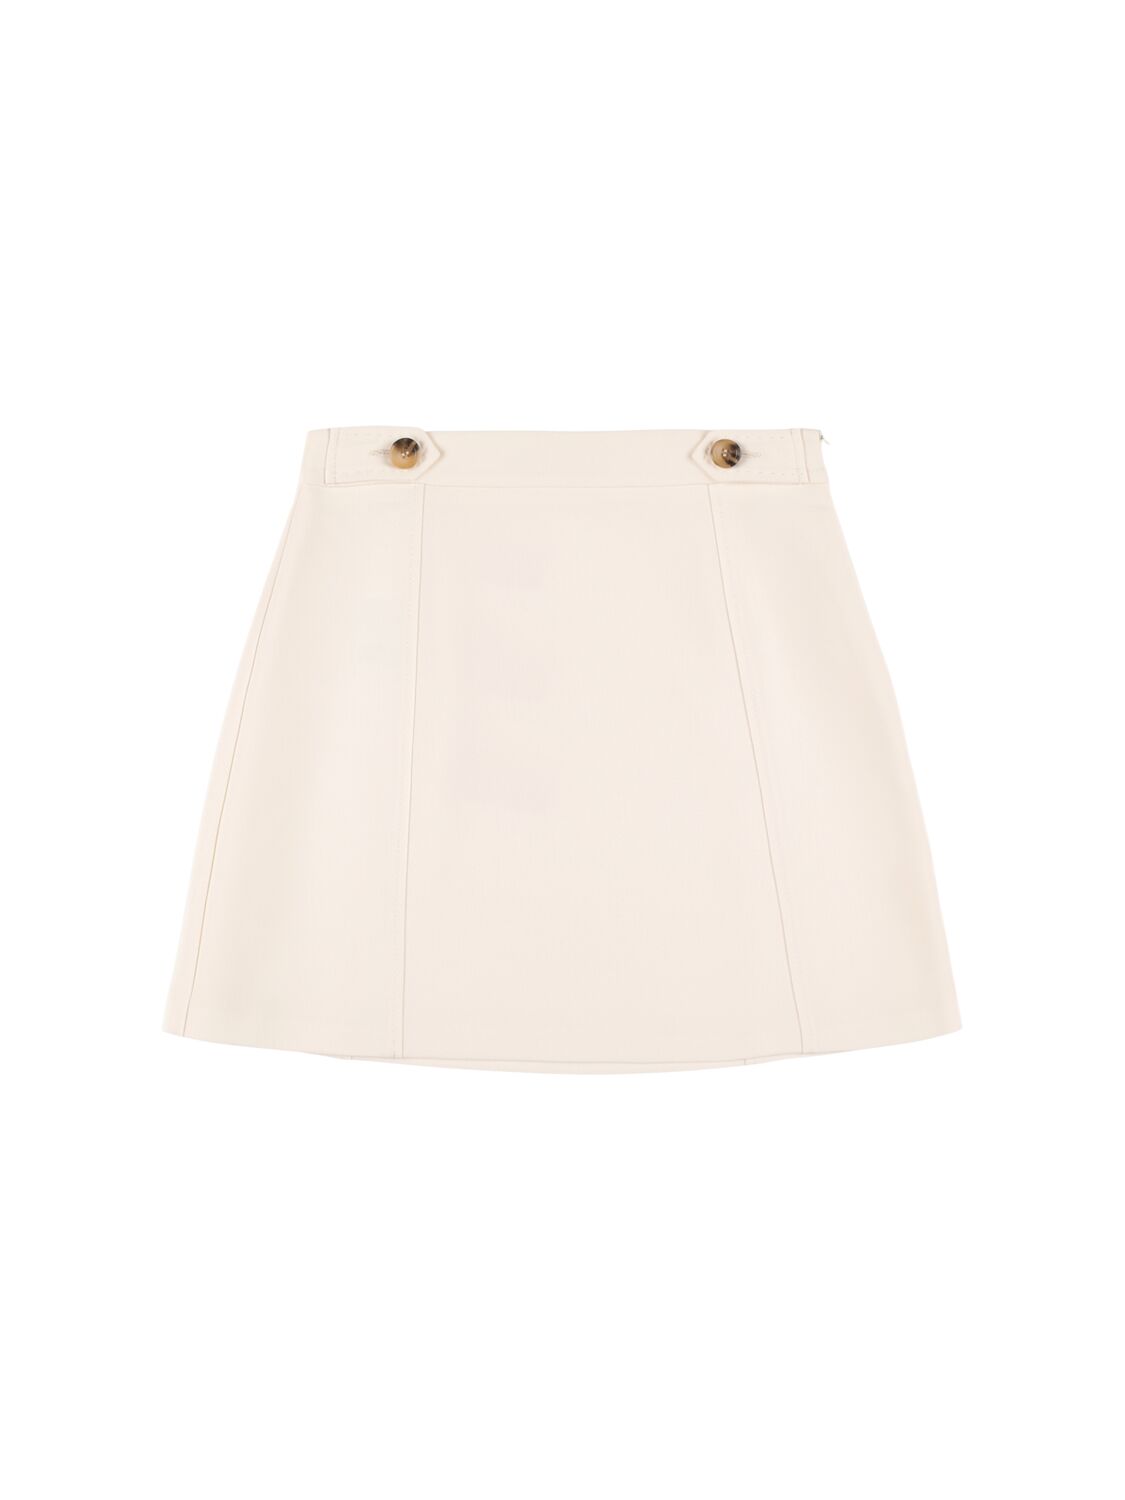 Image of Denim Mini Skirt